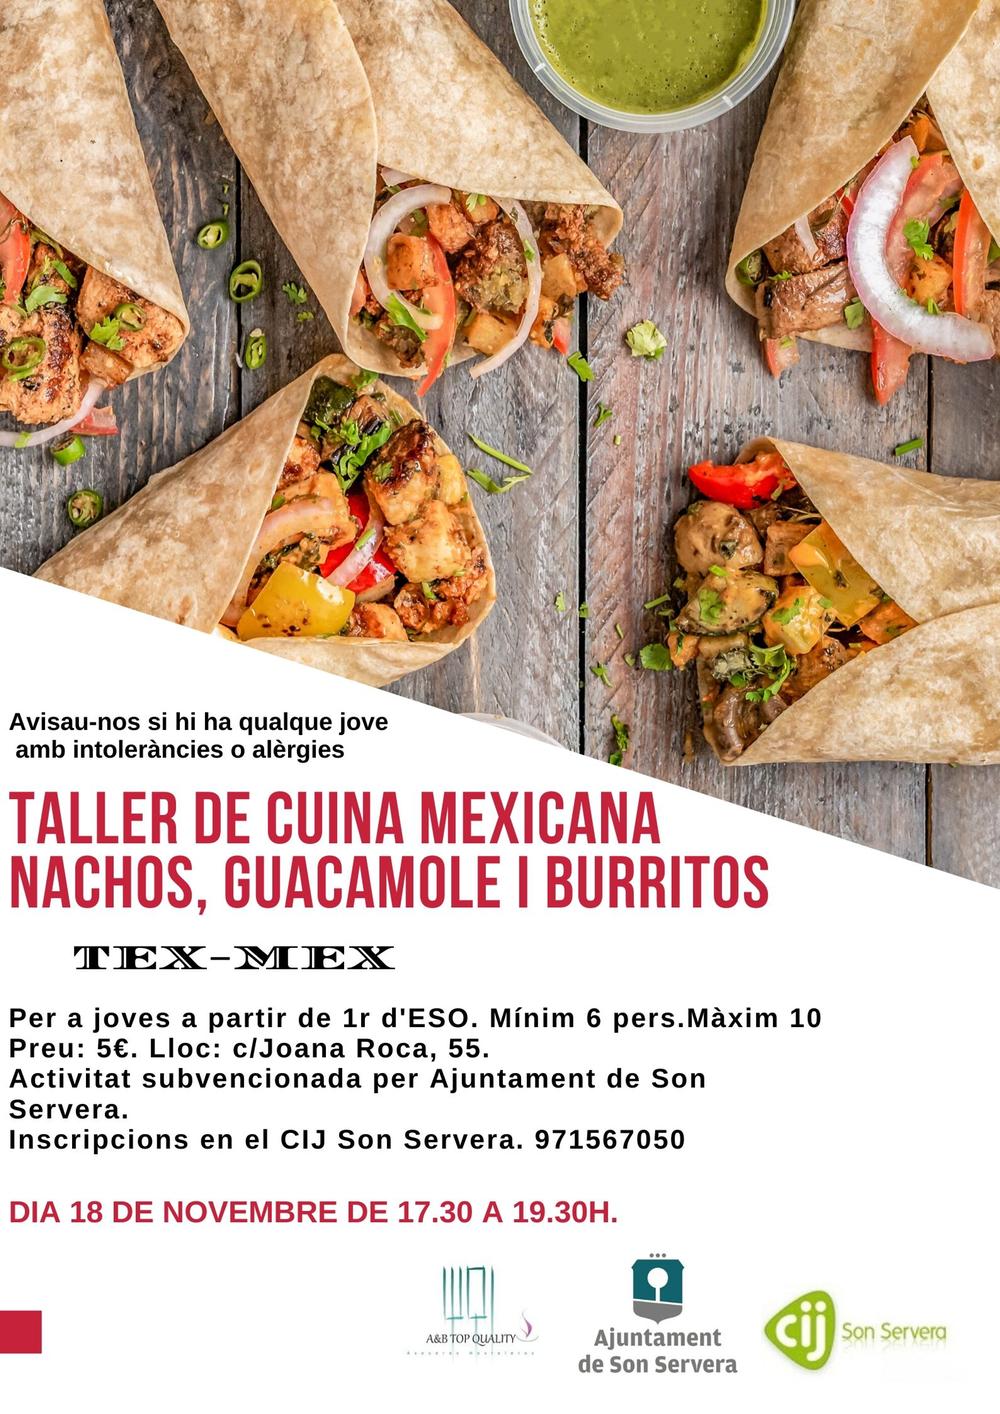 Taller de cuina mexicana: nachos, guacamole i burritos